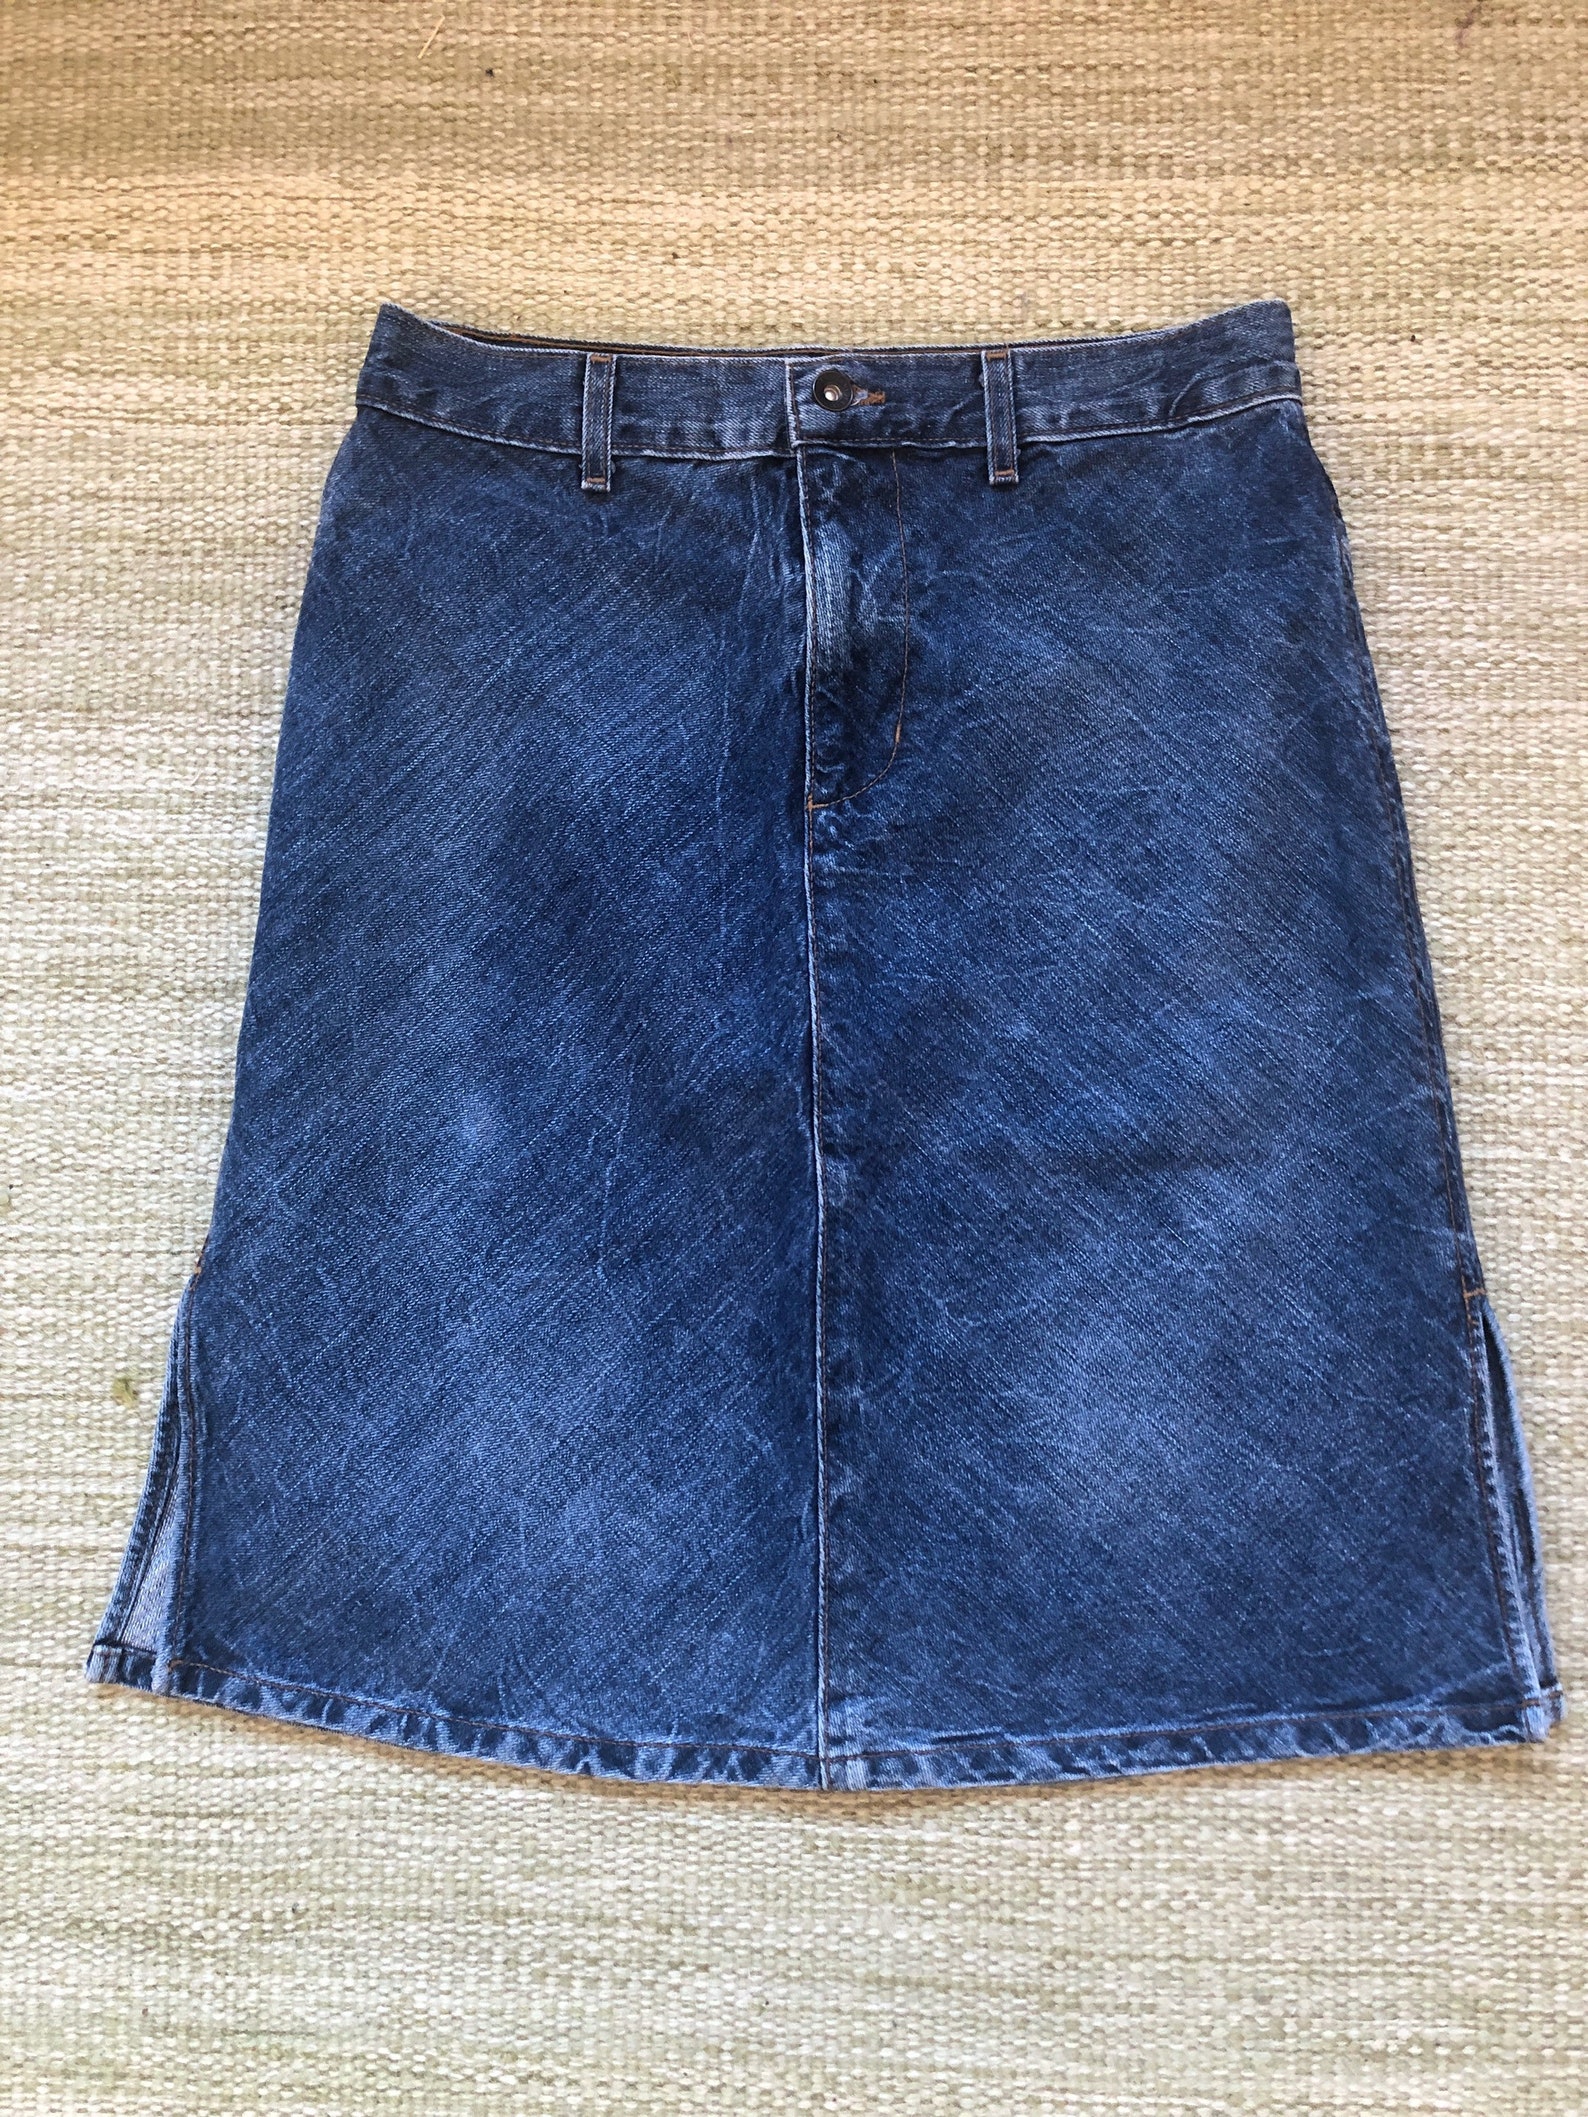 Vintage DKNY denim skirt short length mini denim skirt western | Etsy